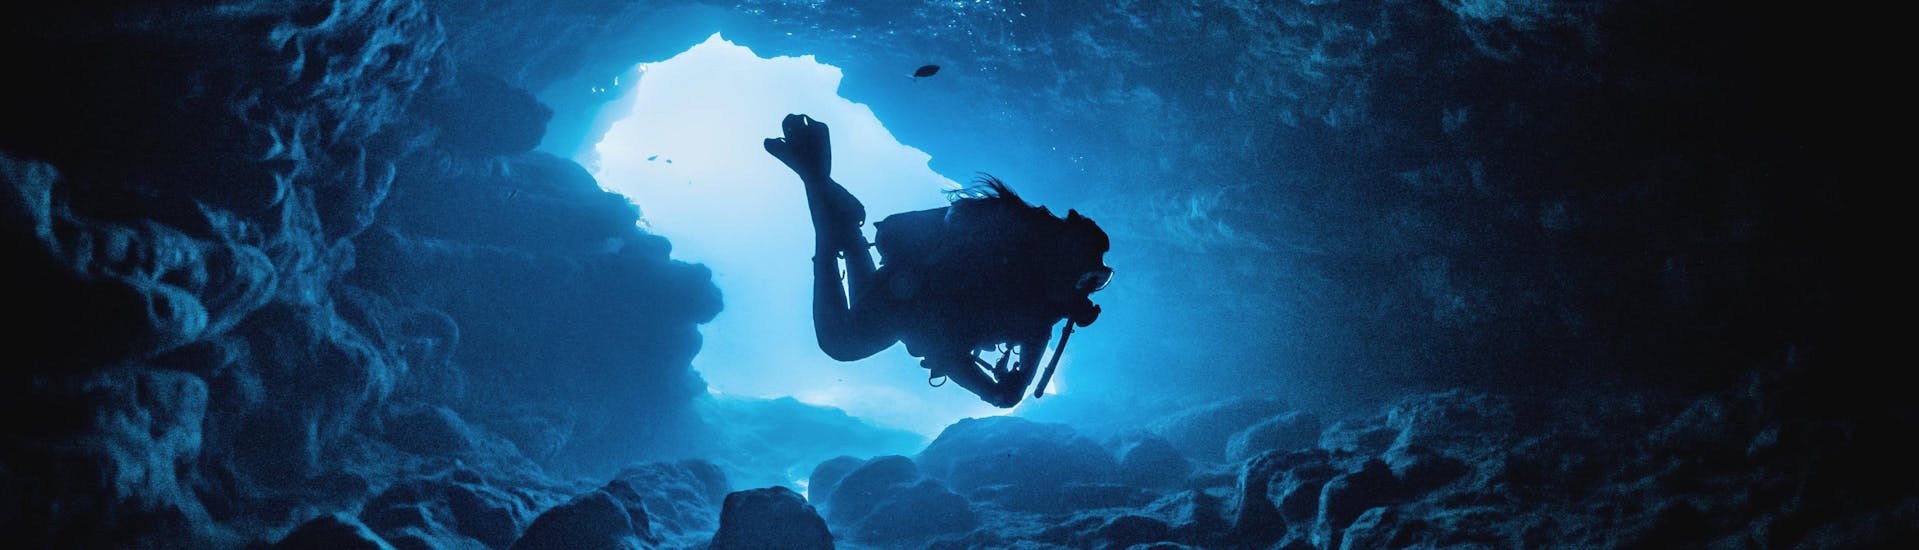 Ein Gerätetaucher erkundet eine der vielen Unterwasserhöhlen Maltas, einem beliebten Reiseziel in Europa für Taucher.